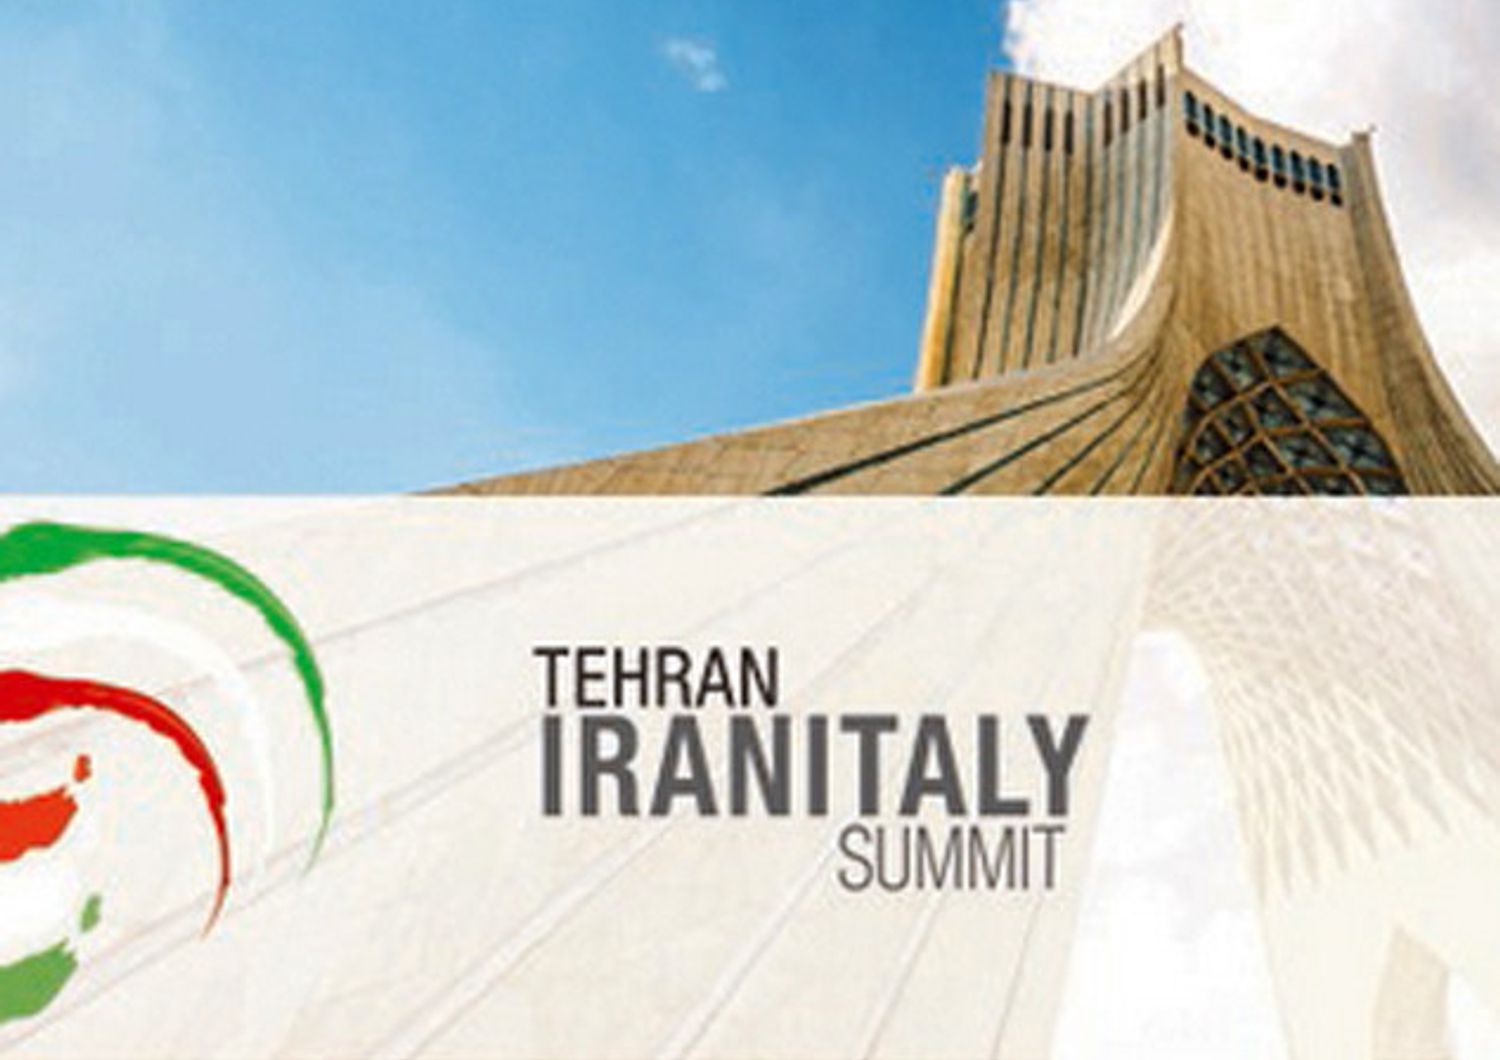 European house ambrosetti italy iran summit